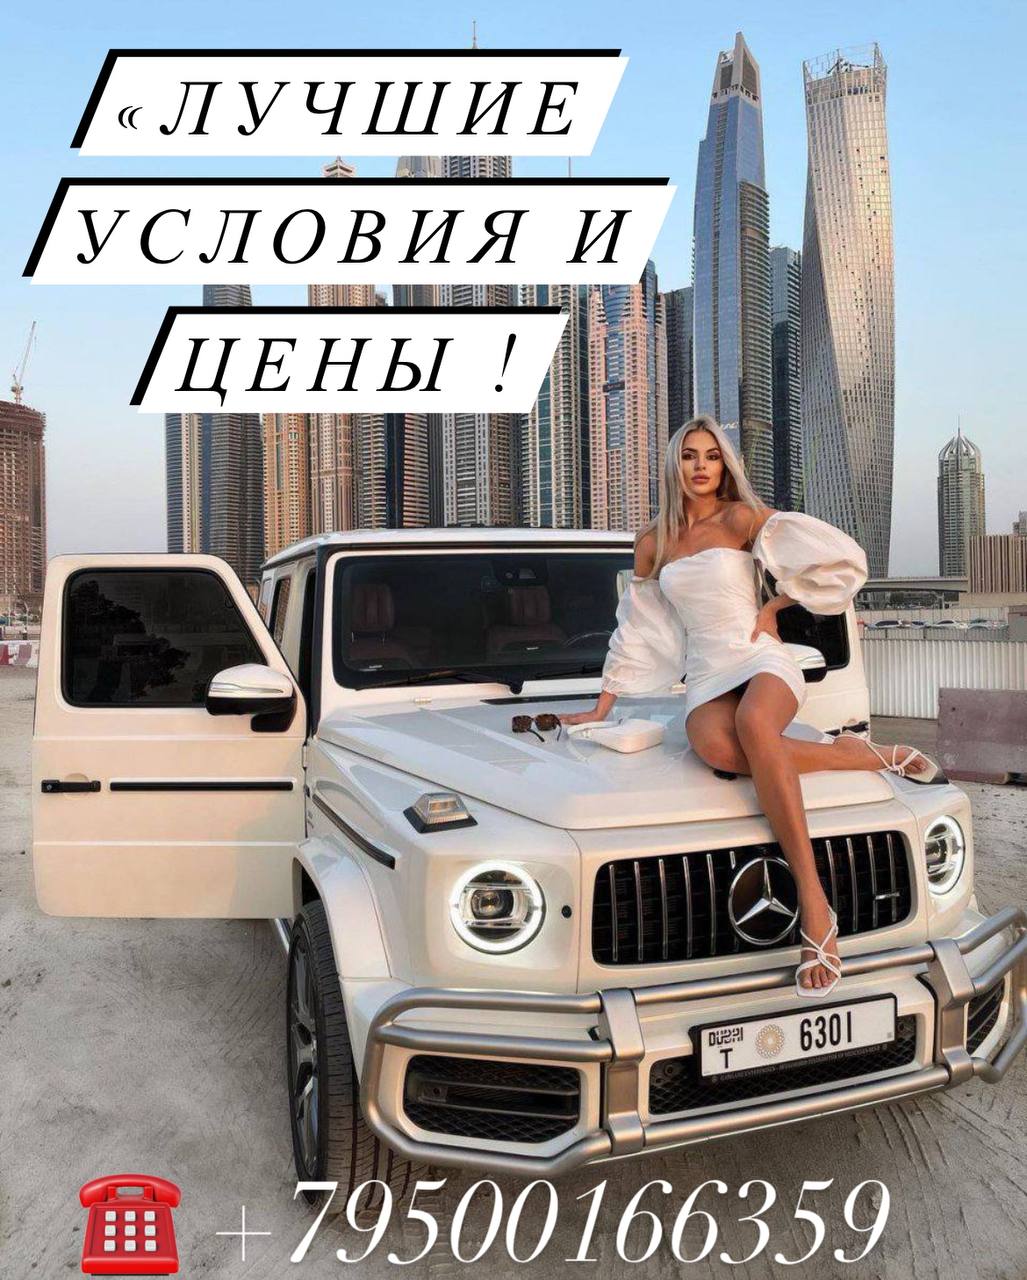 Больше 1 миллиона в месяц стабильно, гарантировано, а главное безопасно! Зарплата от 1.200.000 руб